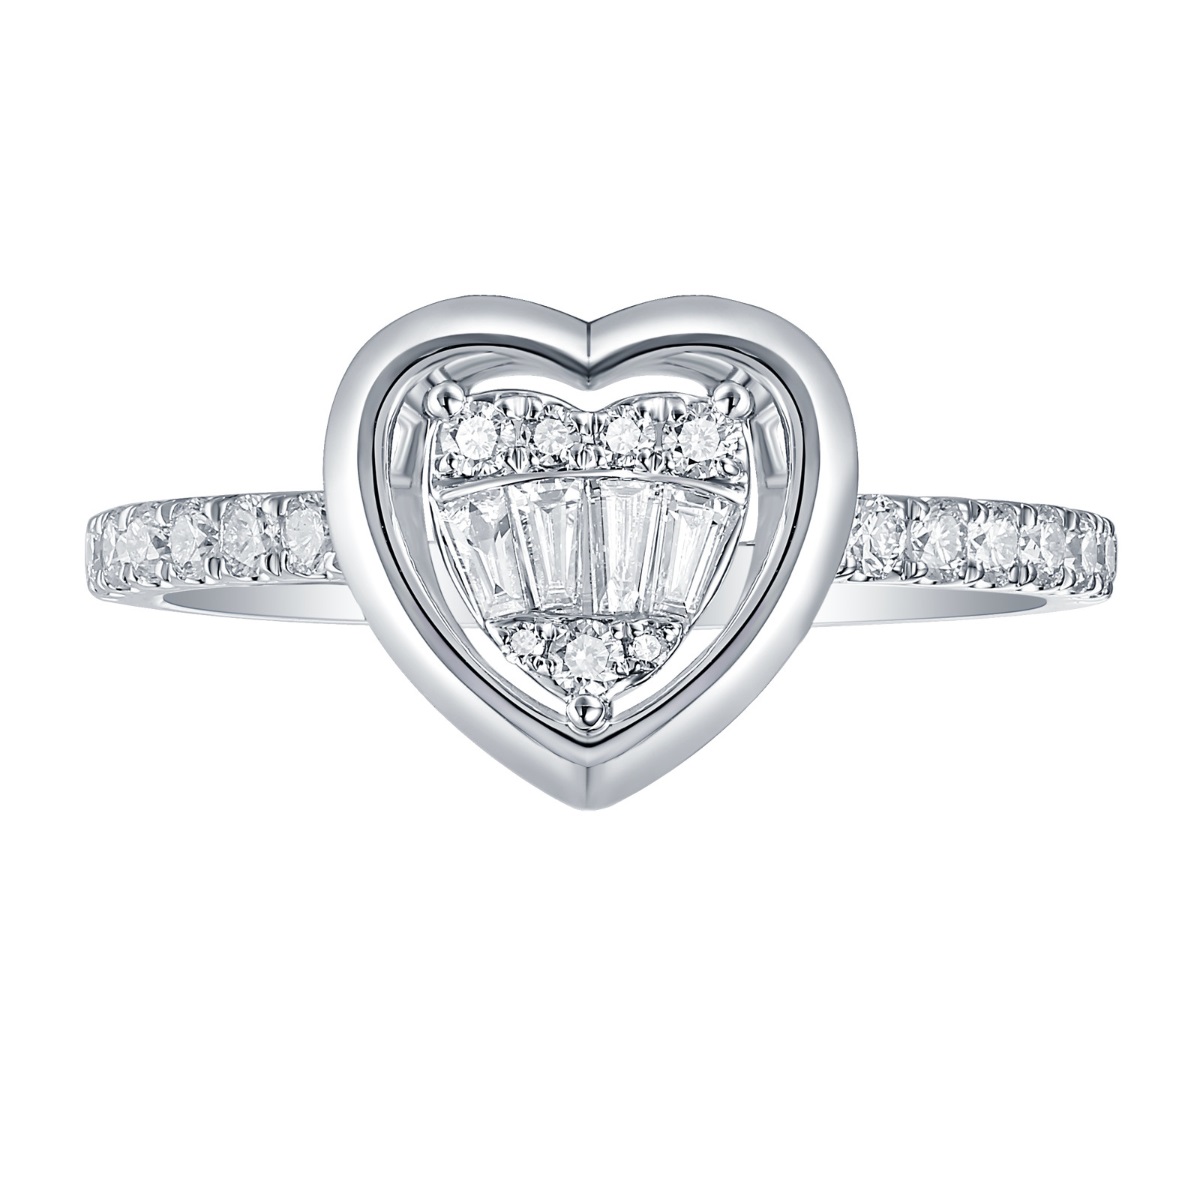 R36569WHT – 18K White Gold  Diamond Ring, 0.39 TCW